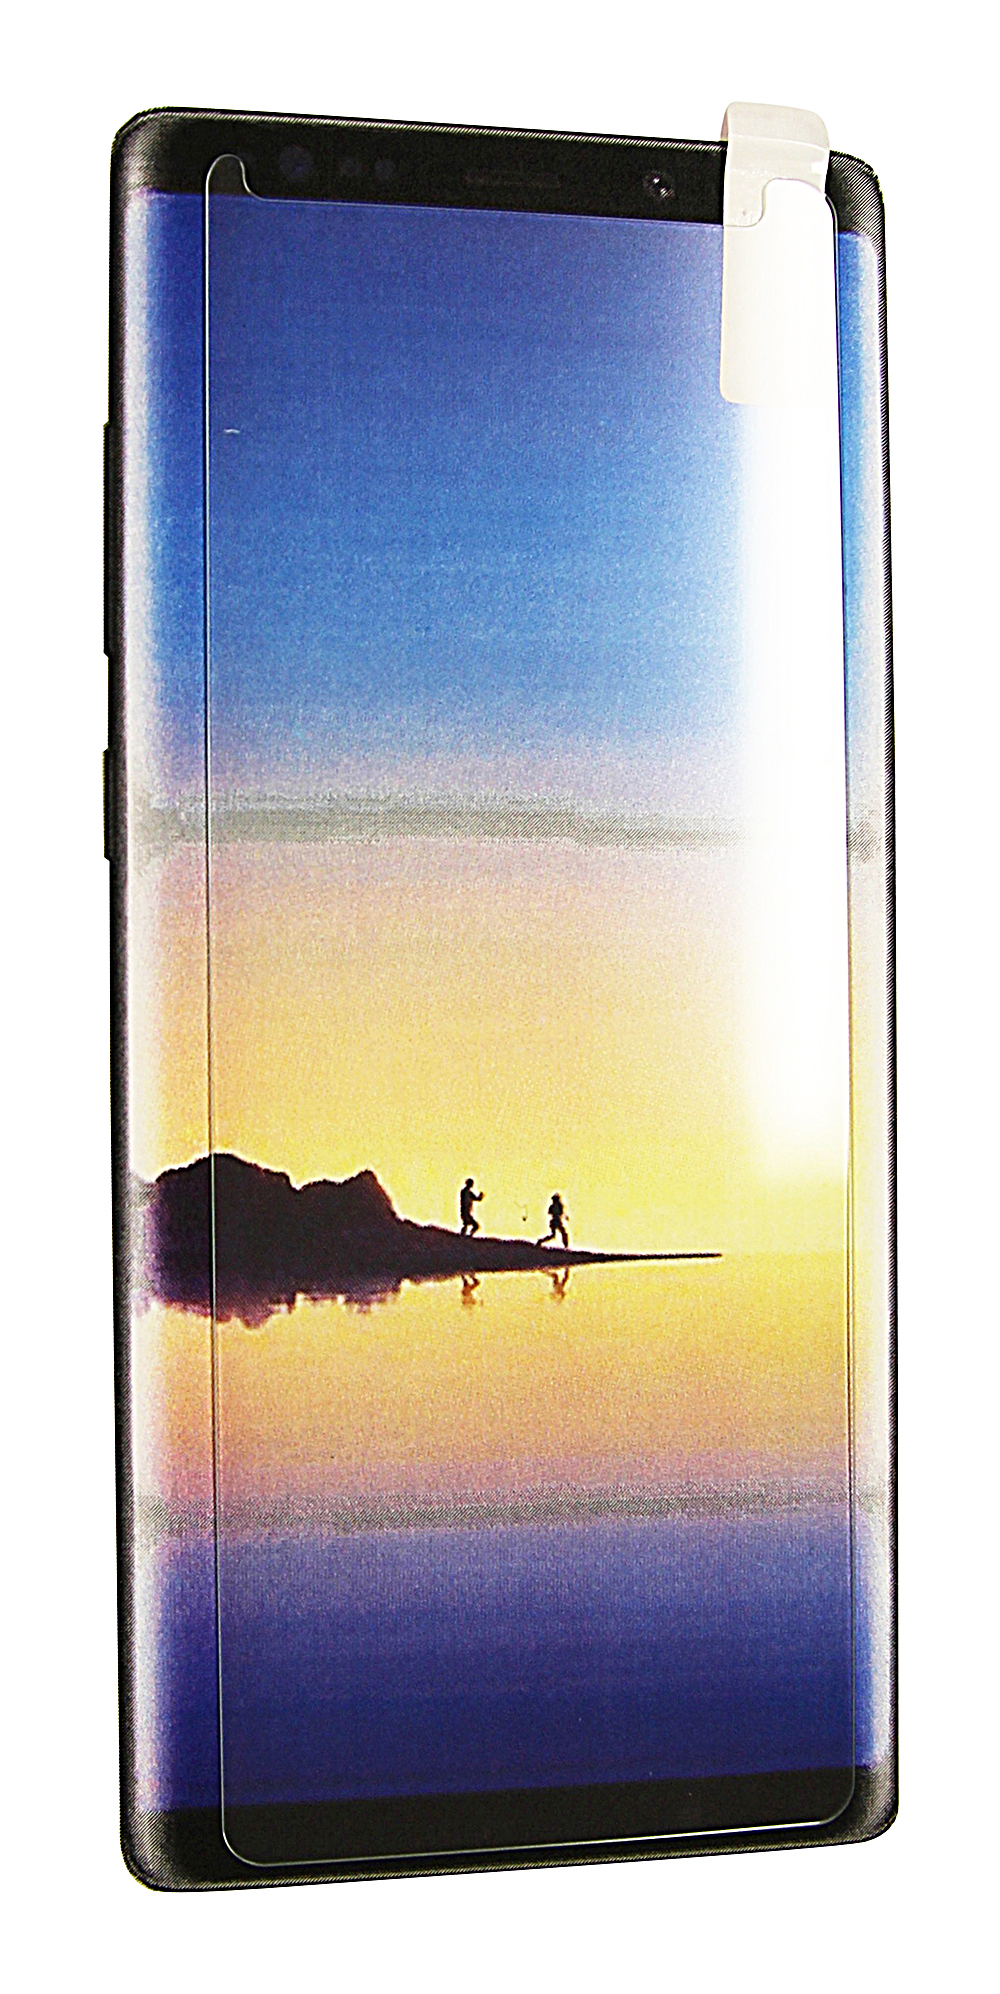 Panserglass Samsung Galaxy Note 8 (N950FD)